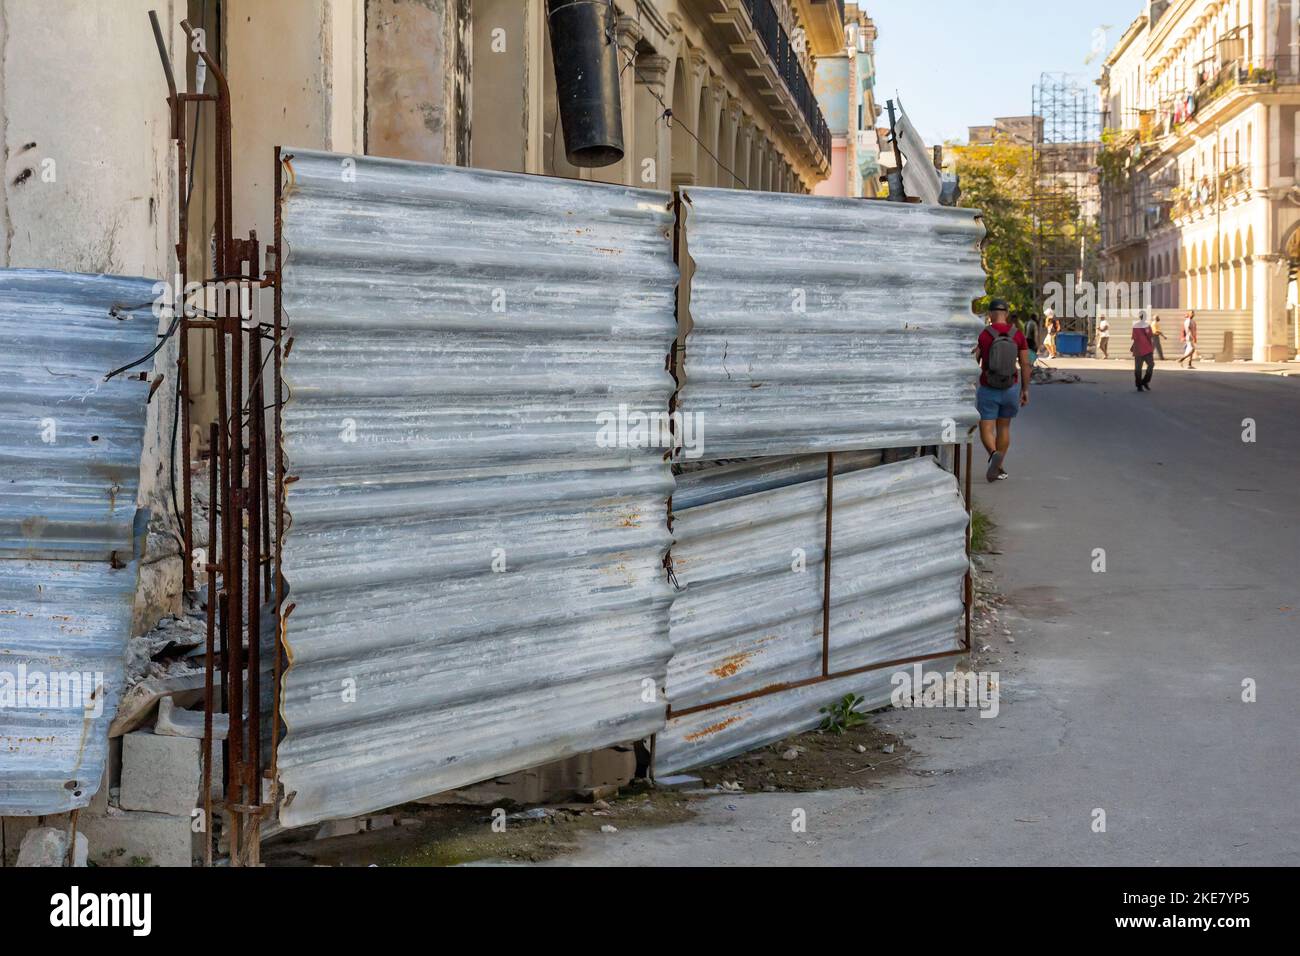 Una vecchia recinzione metallica fatiscente protegge un edificio in pericolo di collasso. Foto Stock